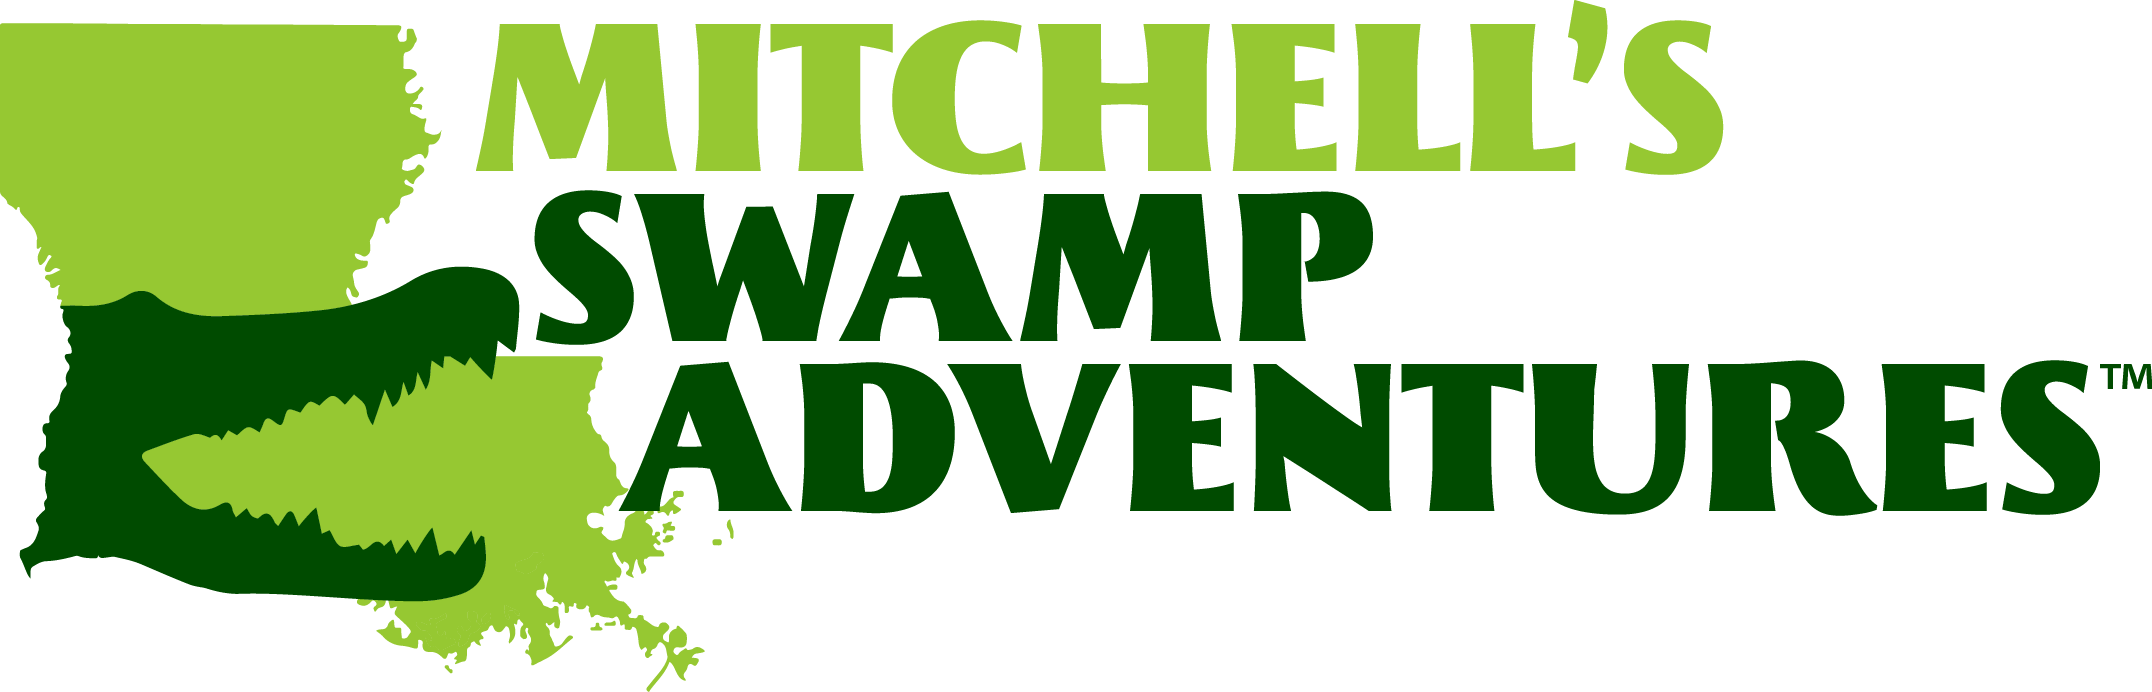 SHOP ONLINE NOW - Bruce Mitchell's Swamp Adventures at Mitchell-Kliebert HQ!